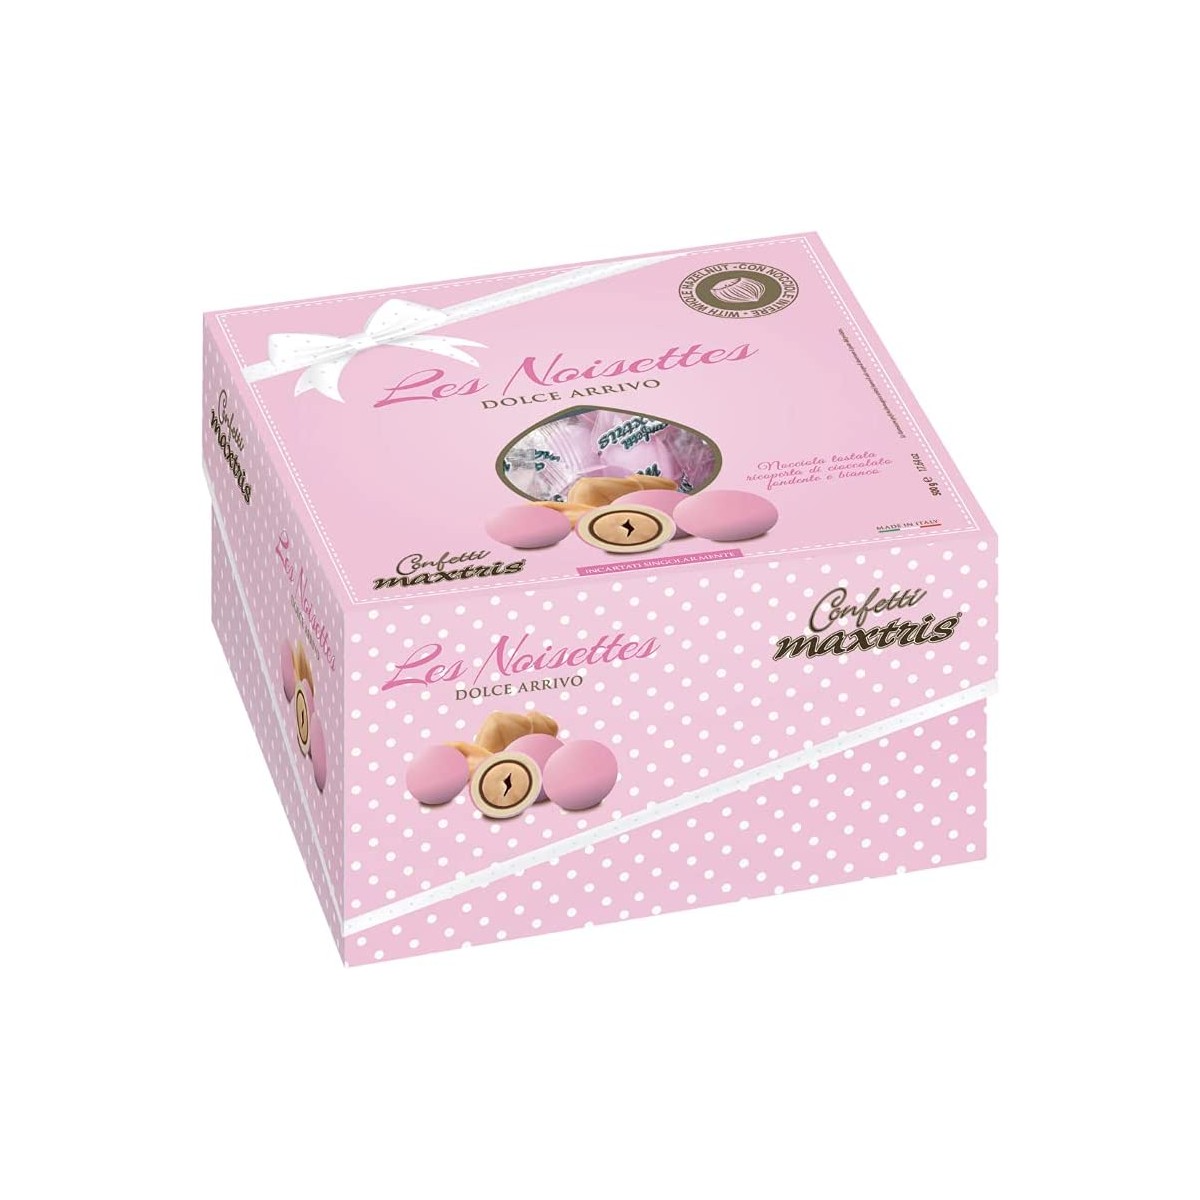 Confetti Maxtris rosa, Les Noisette dolce evento, da 1 kg